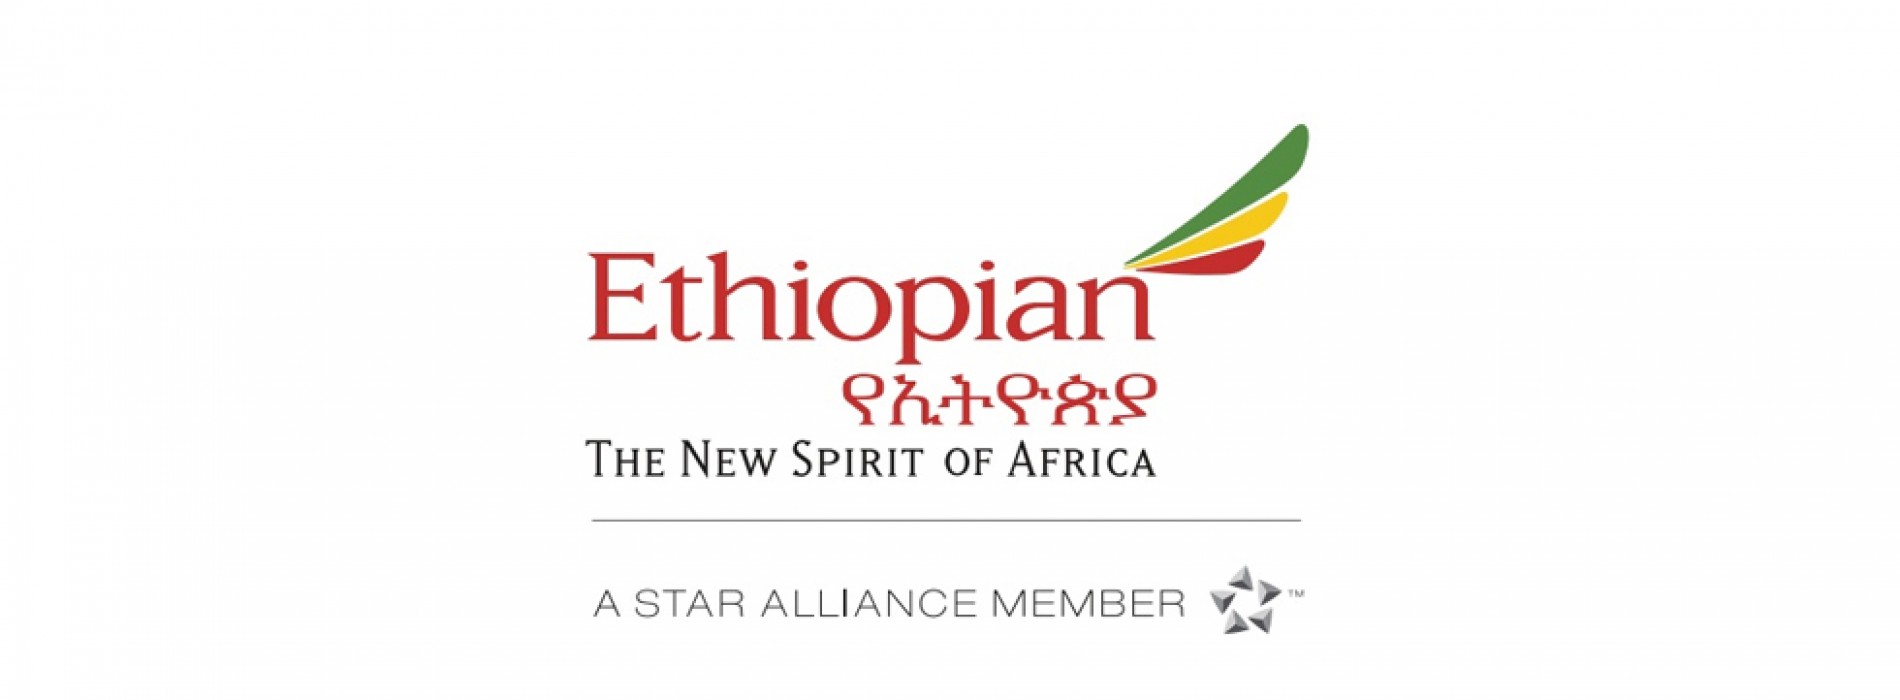 Ethiopian marks 45 Years of uninterrupted service to Mumbai